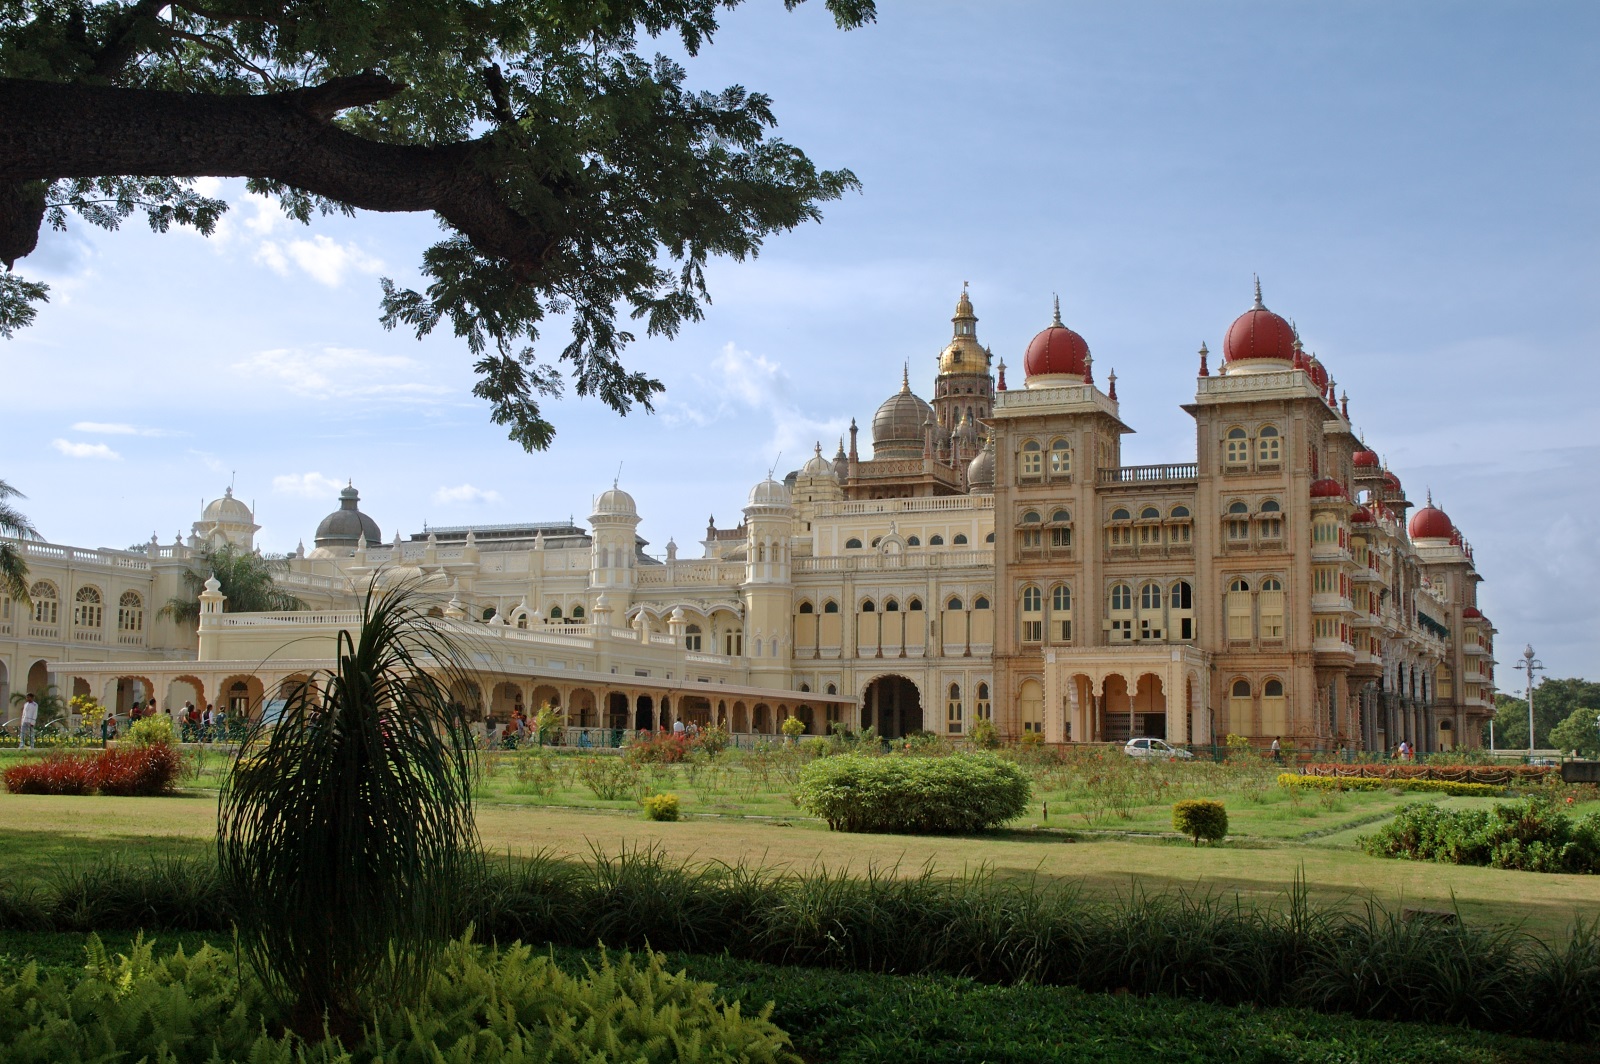 Дворецът Мисор, Индия<br />
Историческият дворец Мисор, разположен в Карнатака, Южна Индия и е една от най-величествените кралски сгради в страната. Той е бил седалище на кралската династия на махараджите на Мисор, който управлява държавата от 1399 до 1950 г. Триетажната каменна сграда от фин сив гранит и розови мраморни куполи има фасада с няколко обширни арки, поддържани от високи колони.